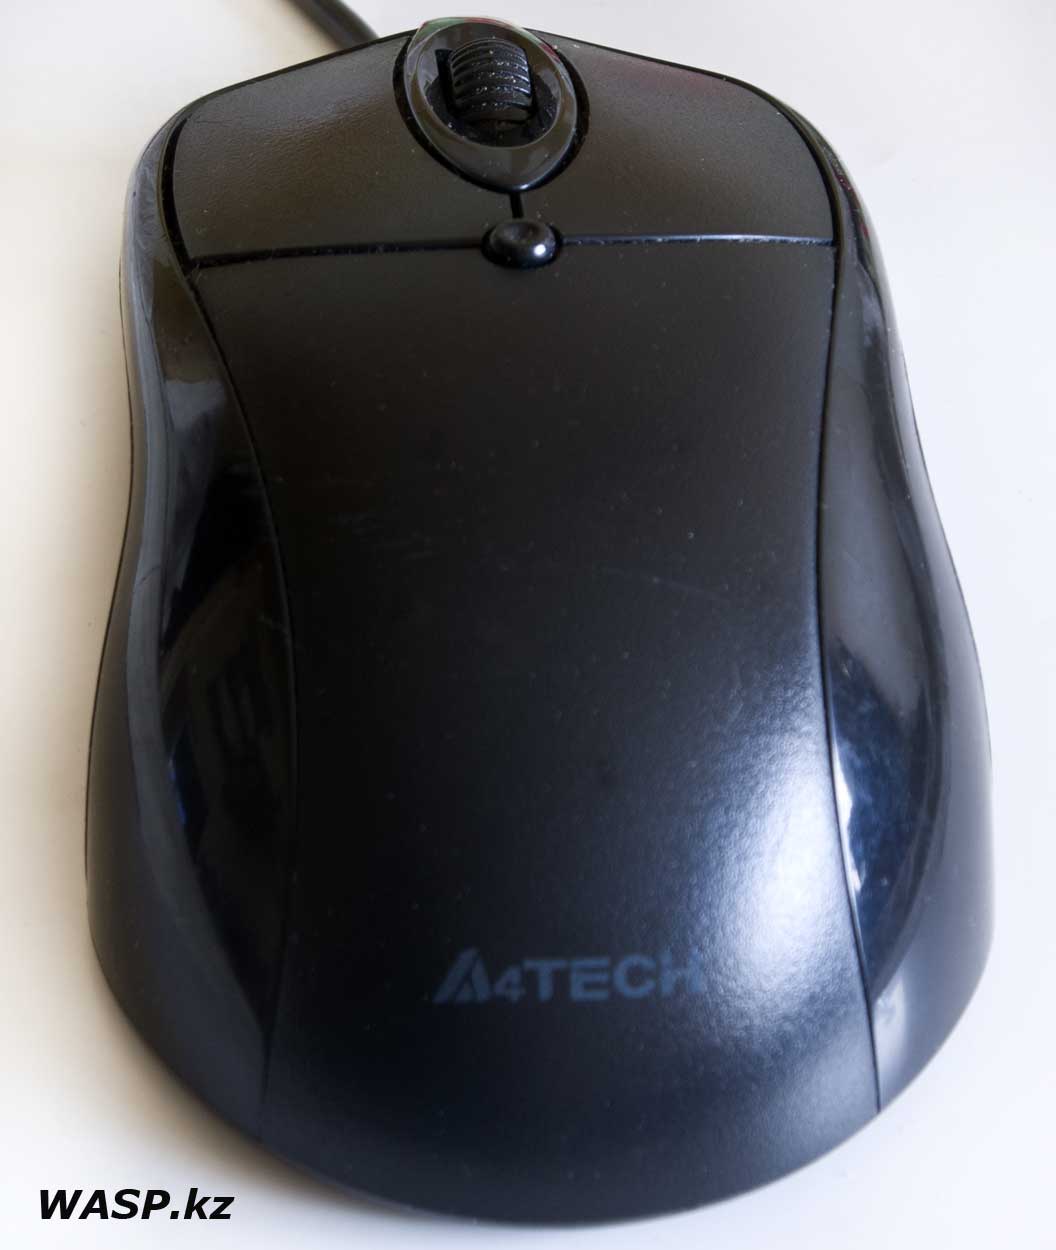 A4Tech описание мышки, какая модель, название неизвестное